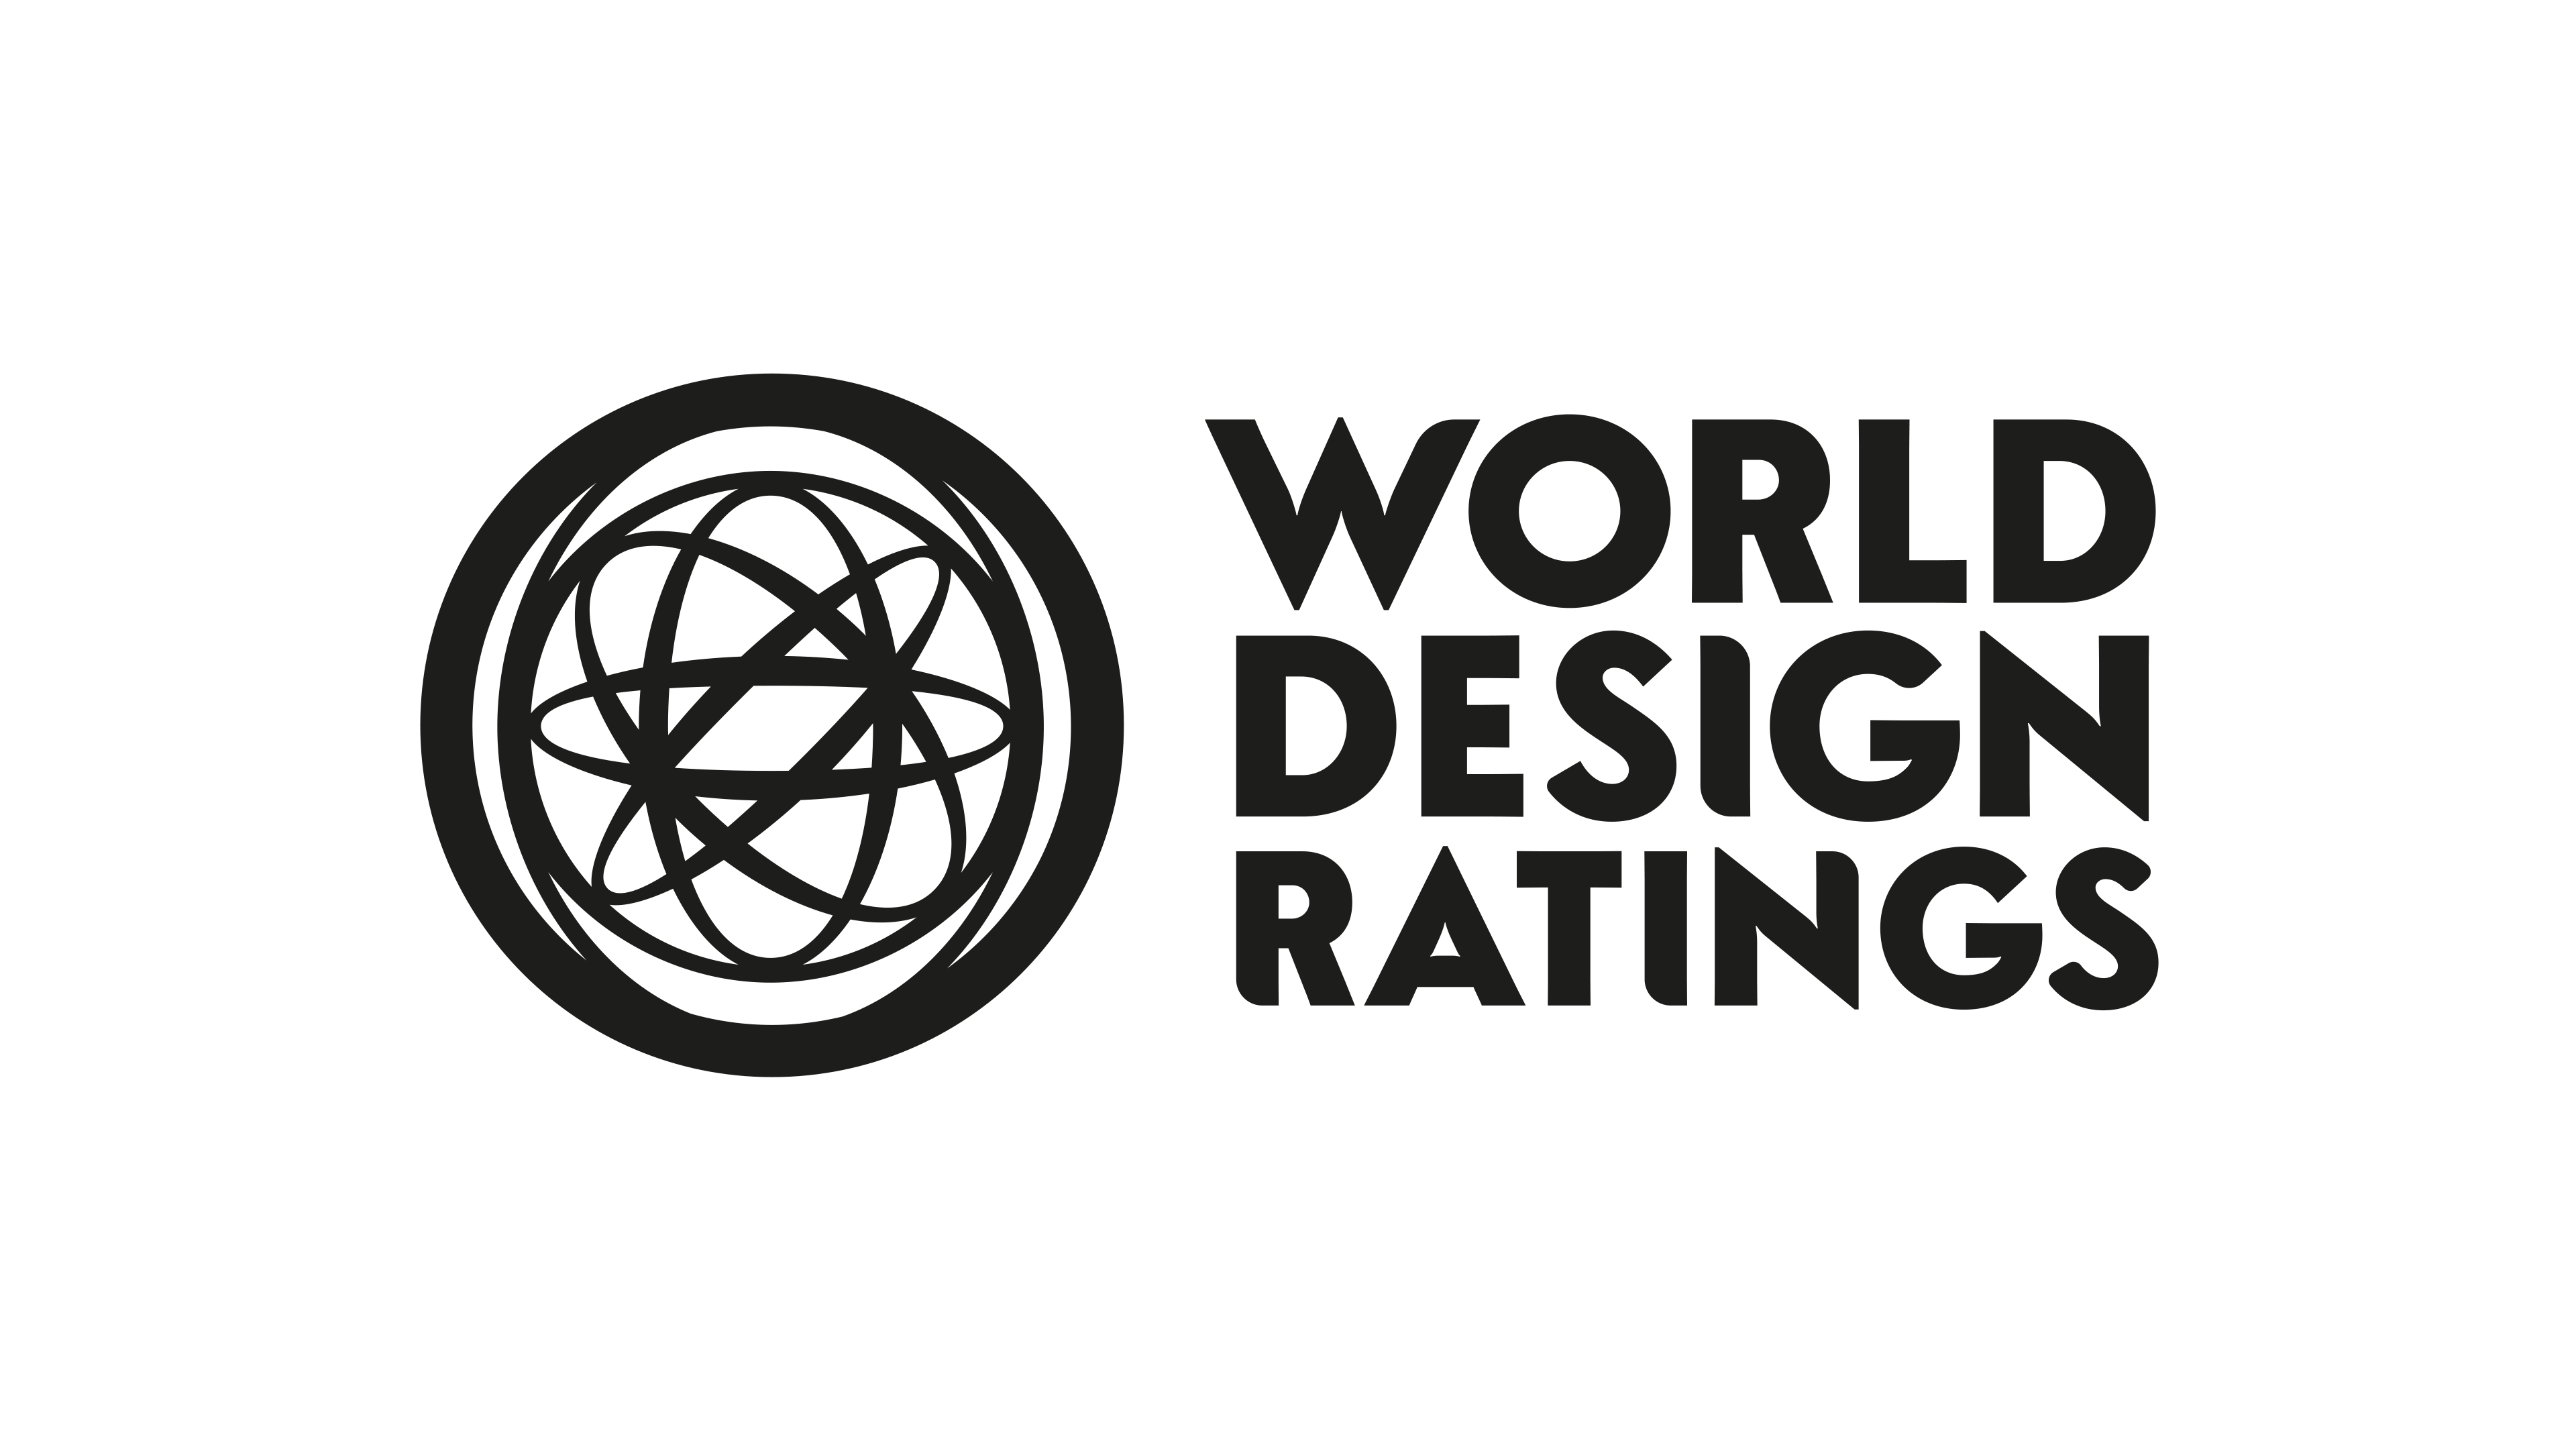 World Design Ratings